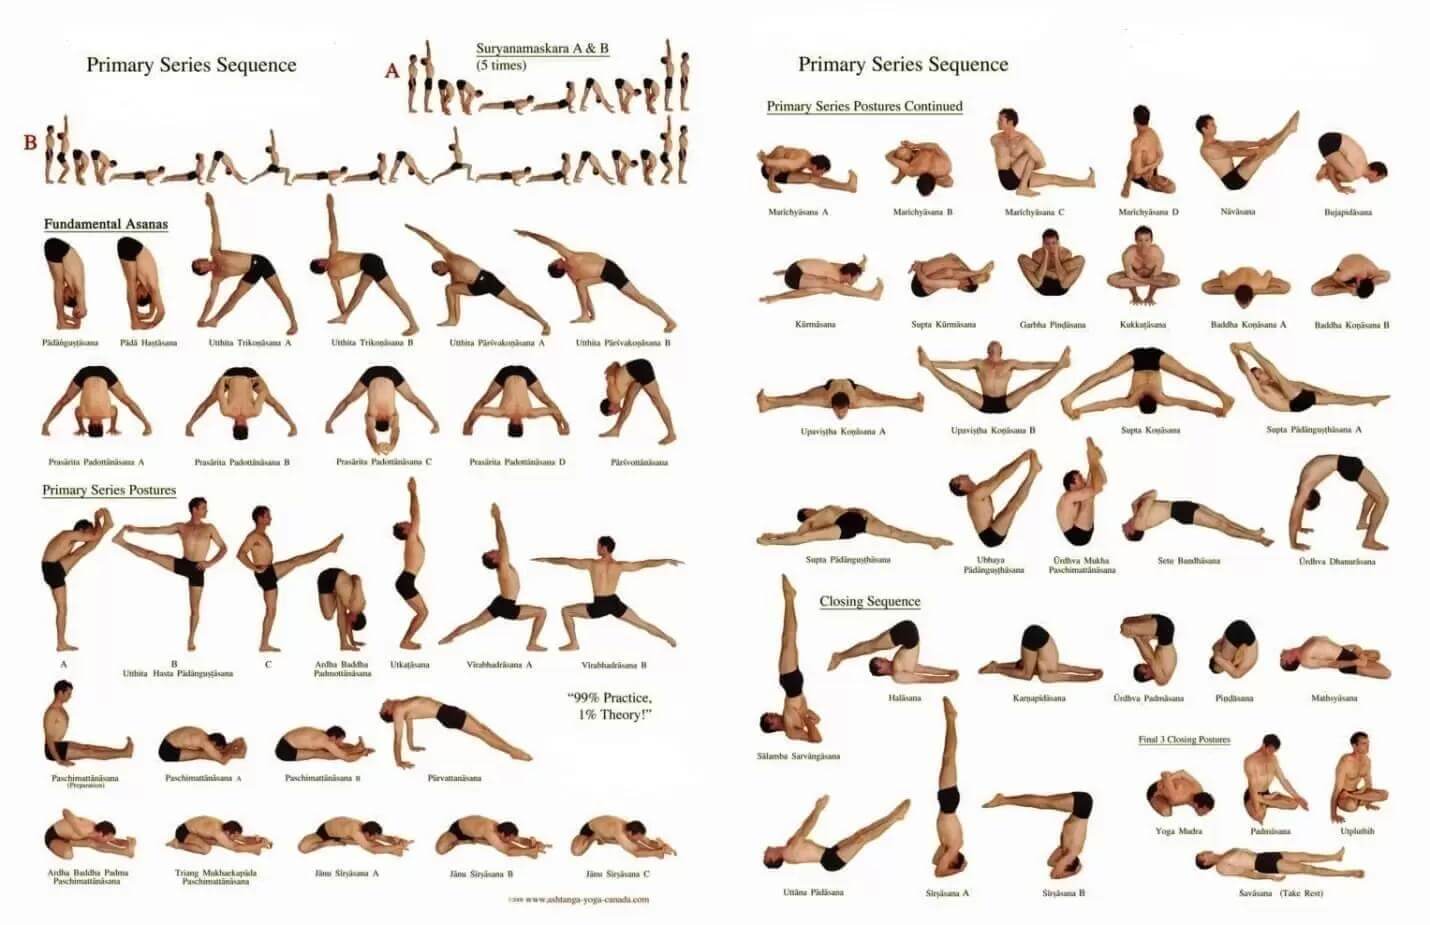 200-hour-yoga-teacher-training-in-rishikesh